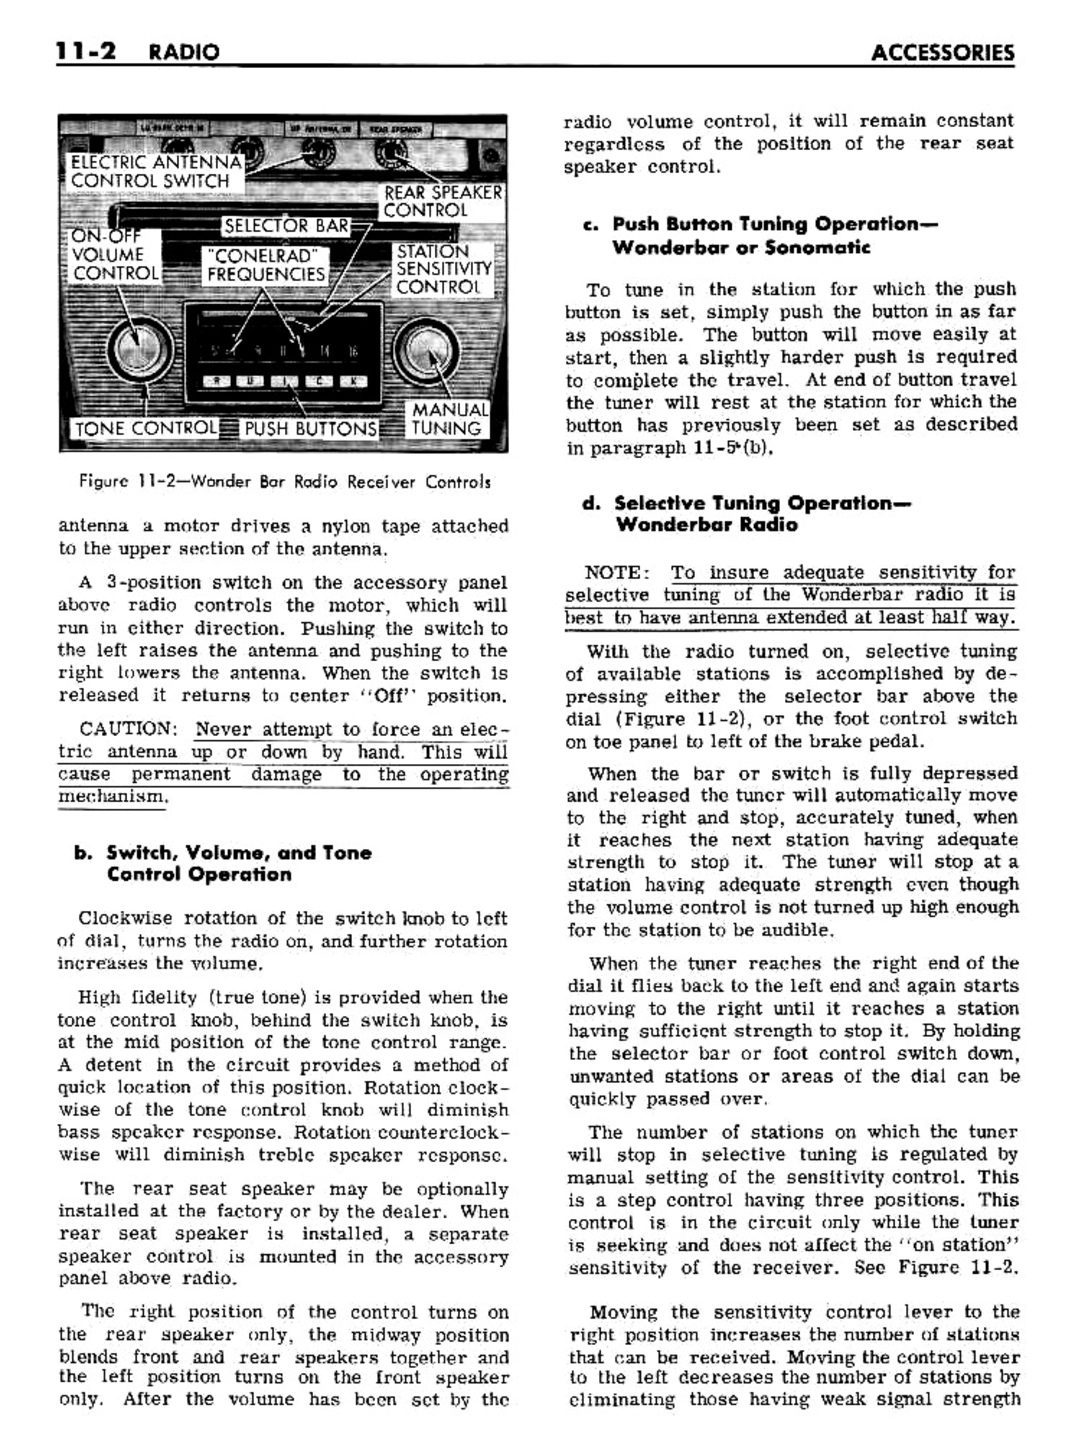 n_11 1961 Buick Shop Manual - Accessories-002-002.jpg